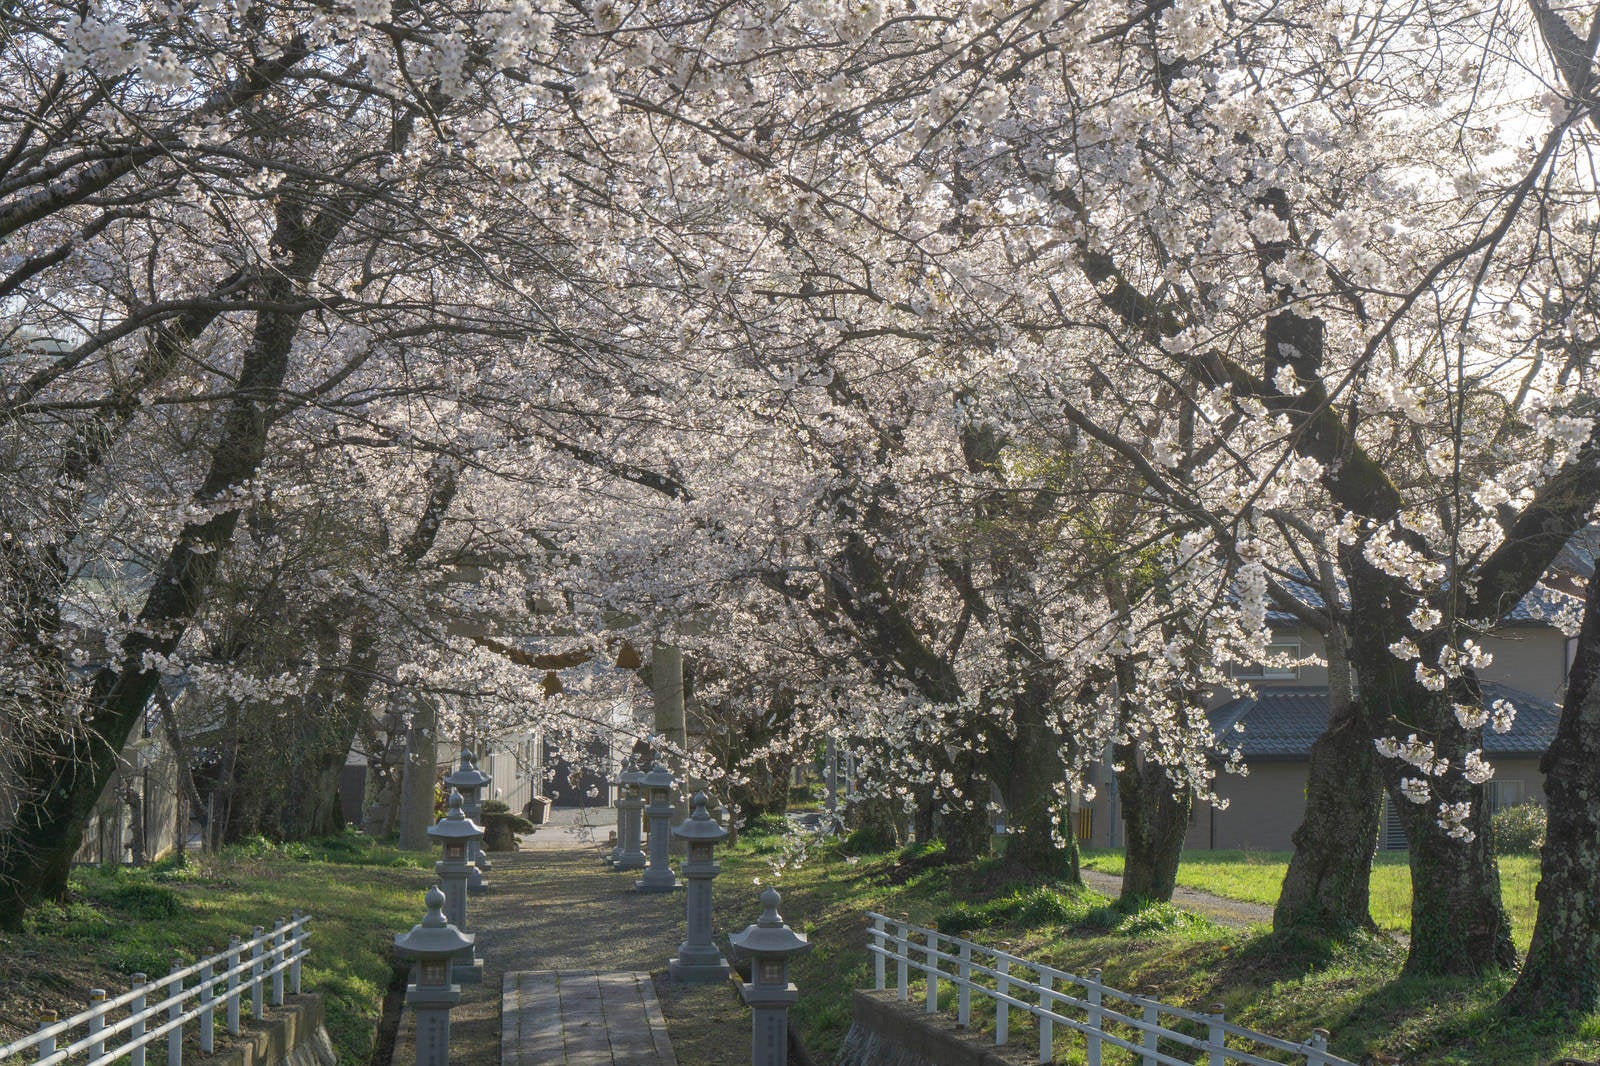 「上を通過する道路から見下ろした桜の参道と桜に囲まれた鳥居」の写真